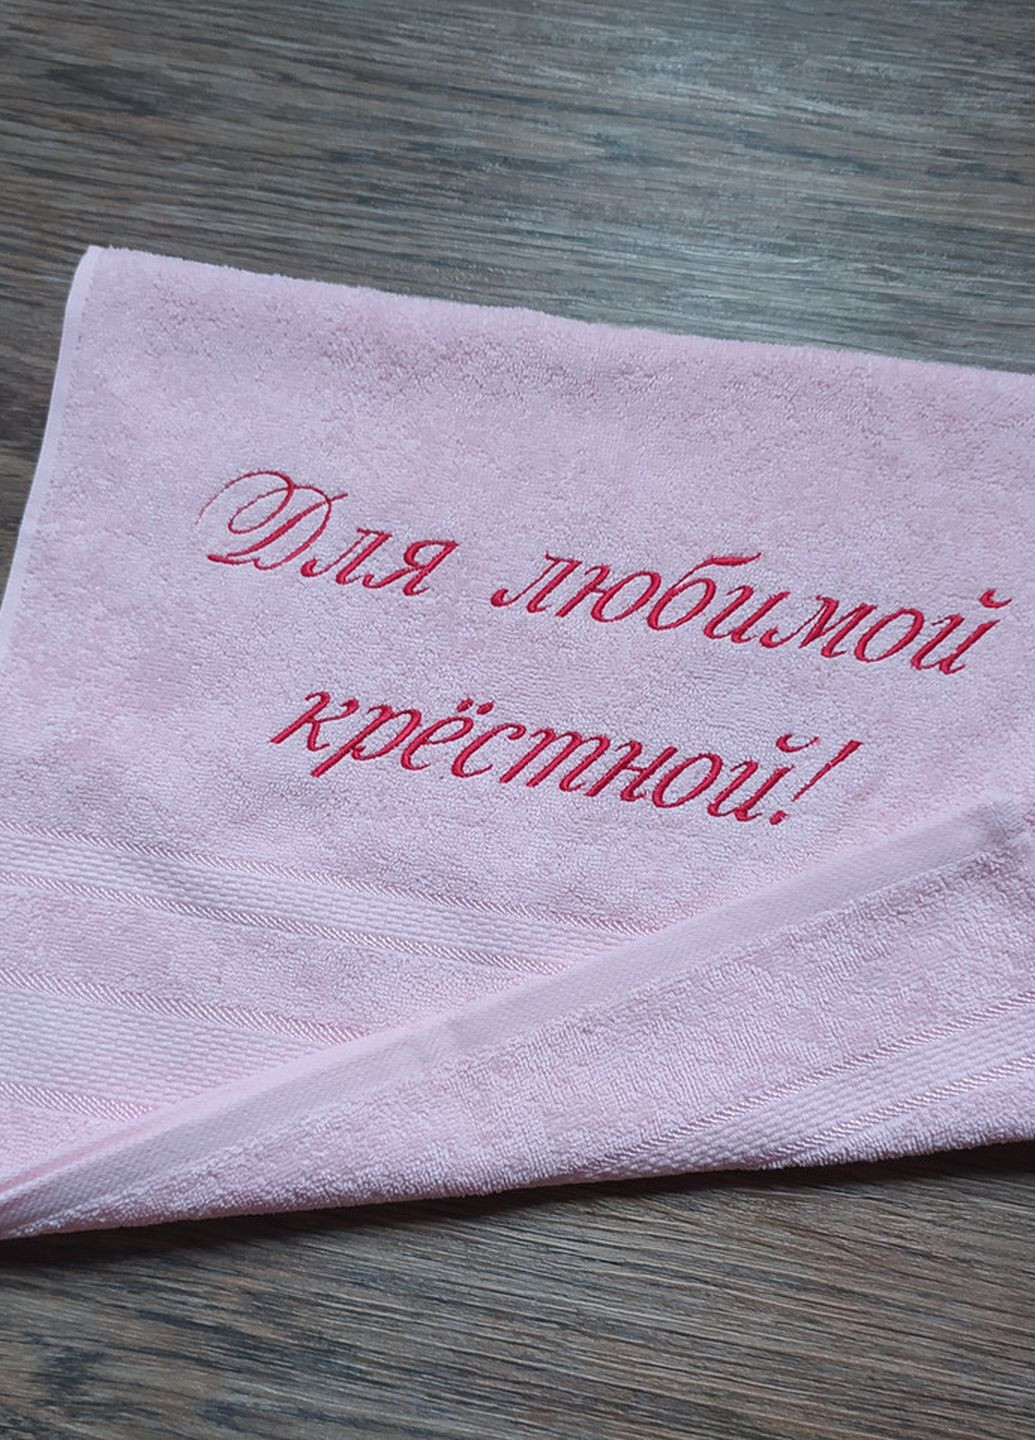 No Brand полотенце махровое лицевое 40*70 розовый с вышивкой крестной маме (00096) однотонный розовый производство - Украина